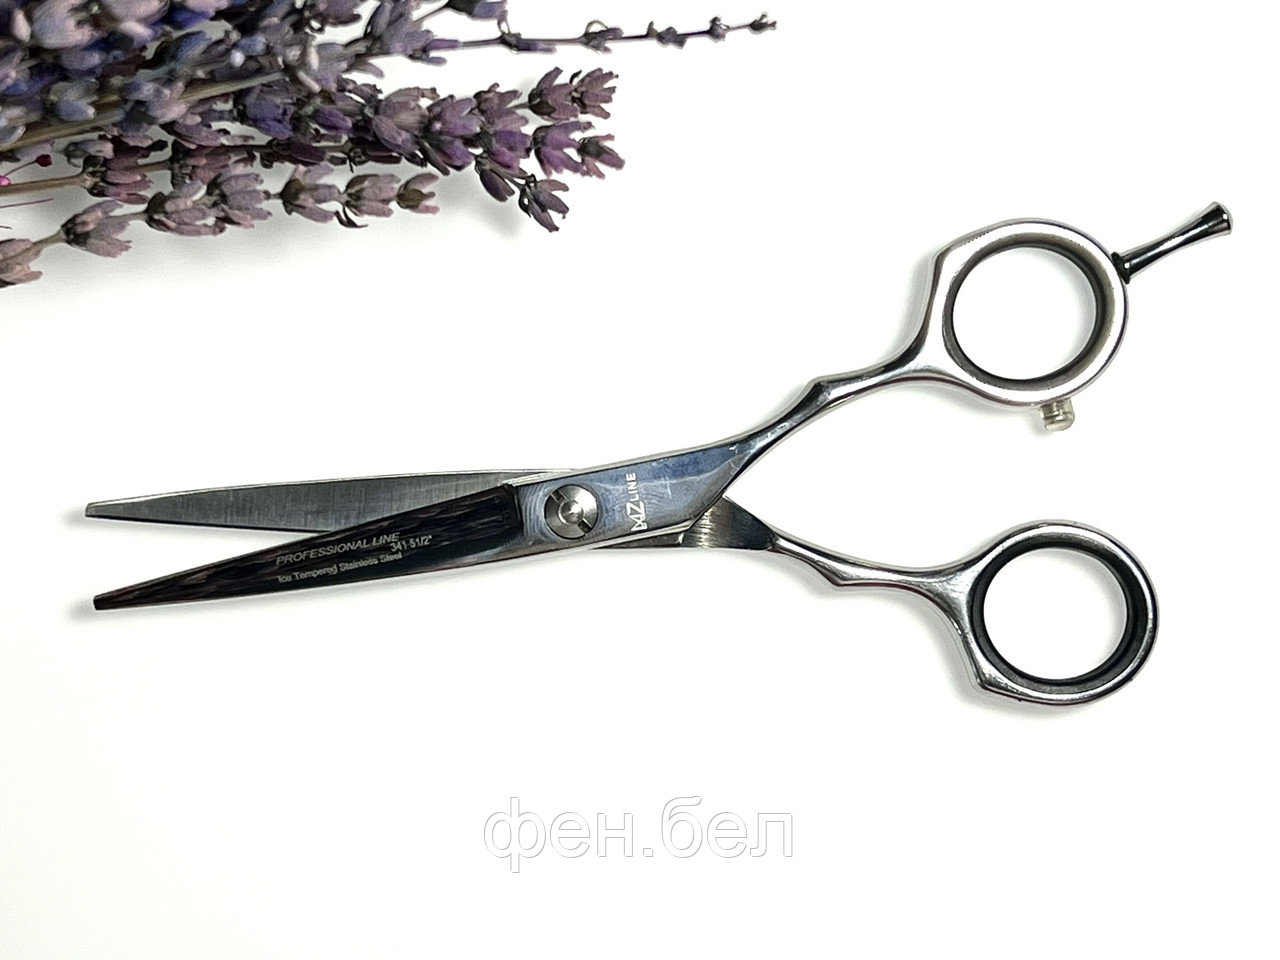 Ножницы парикмахерские для стрижки волос Solingen Mertz №5.5 341/5.5